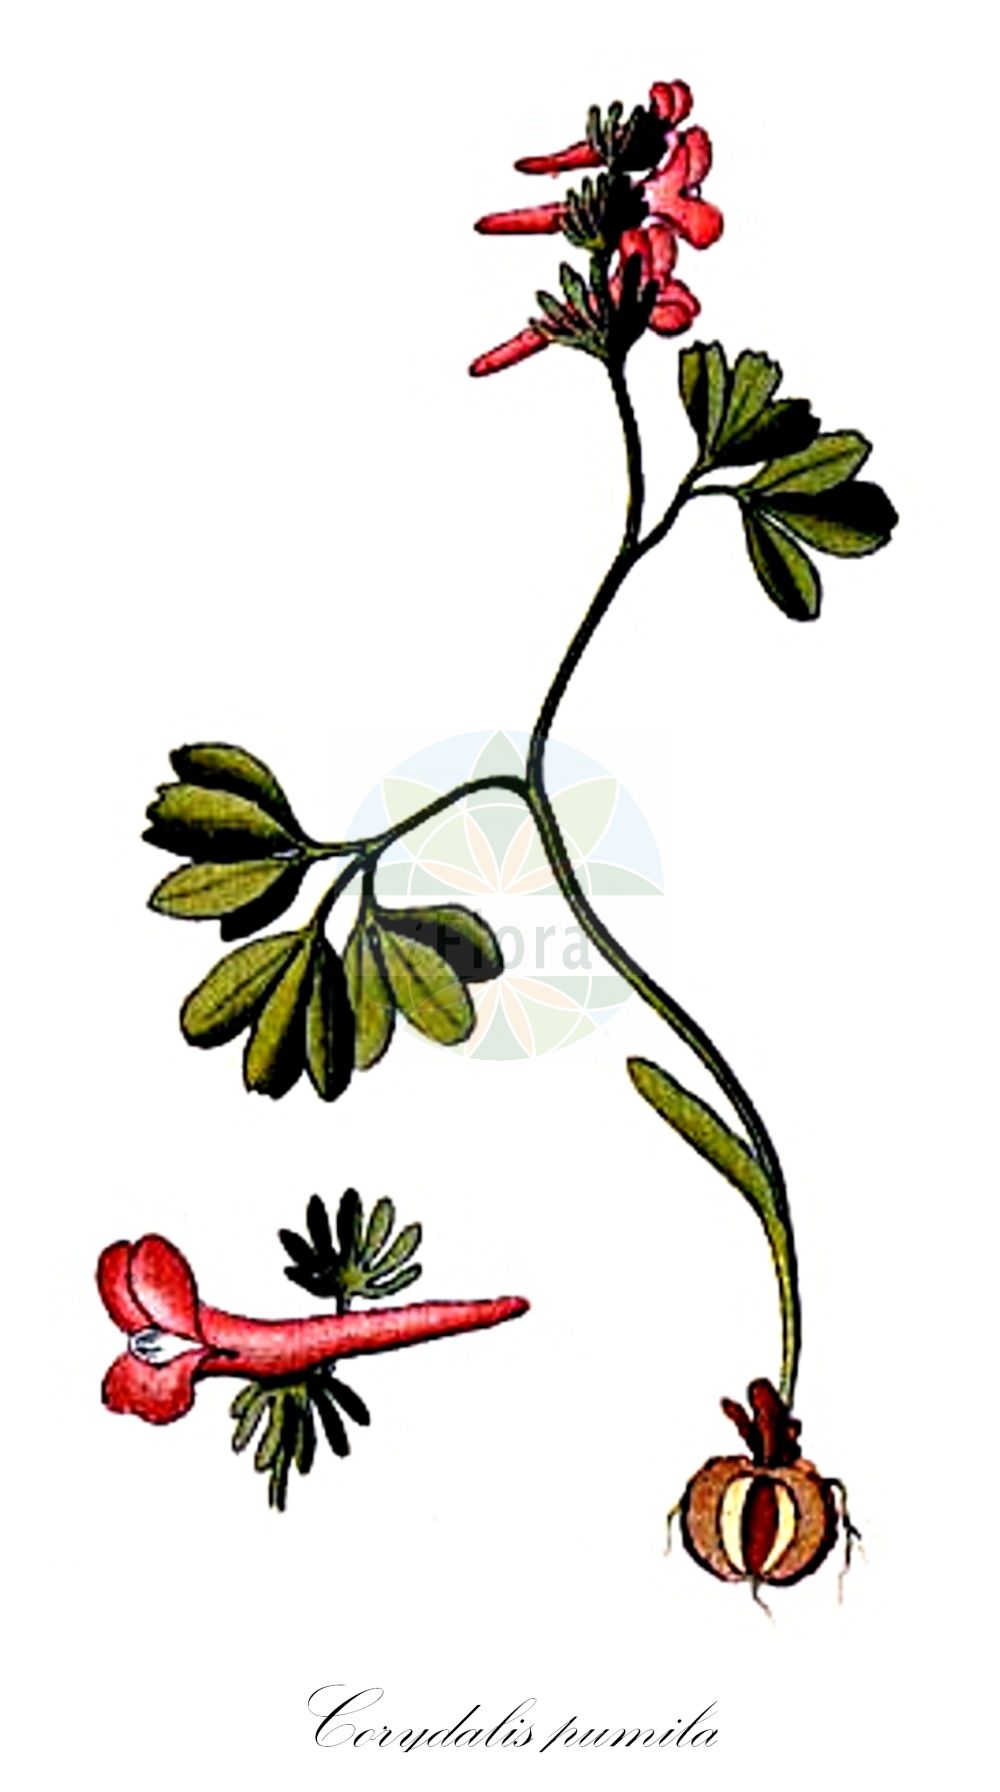 Historische Abbildung von Corydalis pumila (Zwerg-Lerchensporn - Small Hollow-root). Das Bild zeigt Blatt, Bluete, Frucht und Same. ---- Historical Drawing of Corydalis pumila (Zwerg-Lerchensporn - Small Hollow-root). The image is showing leaf, flower, fruit and seed.(Corydalis pumila,Zwerg-Lerchensporn,Small Hollow-root,Corydalis pumila,Fumaria pumila,Zwerg-Lerchensporn,Kleiner Lerchensporn,Small Hollow-root,Corydalis,Lerchensporn,Hollow-root,Papaveraceae,Mohngewächse,Poppy family,Blatt,Bluete,Frucht,Same,leaf,flower,fruit,seed,von Schlechtendal (1840f))